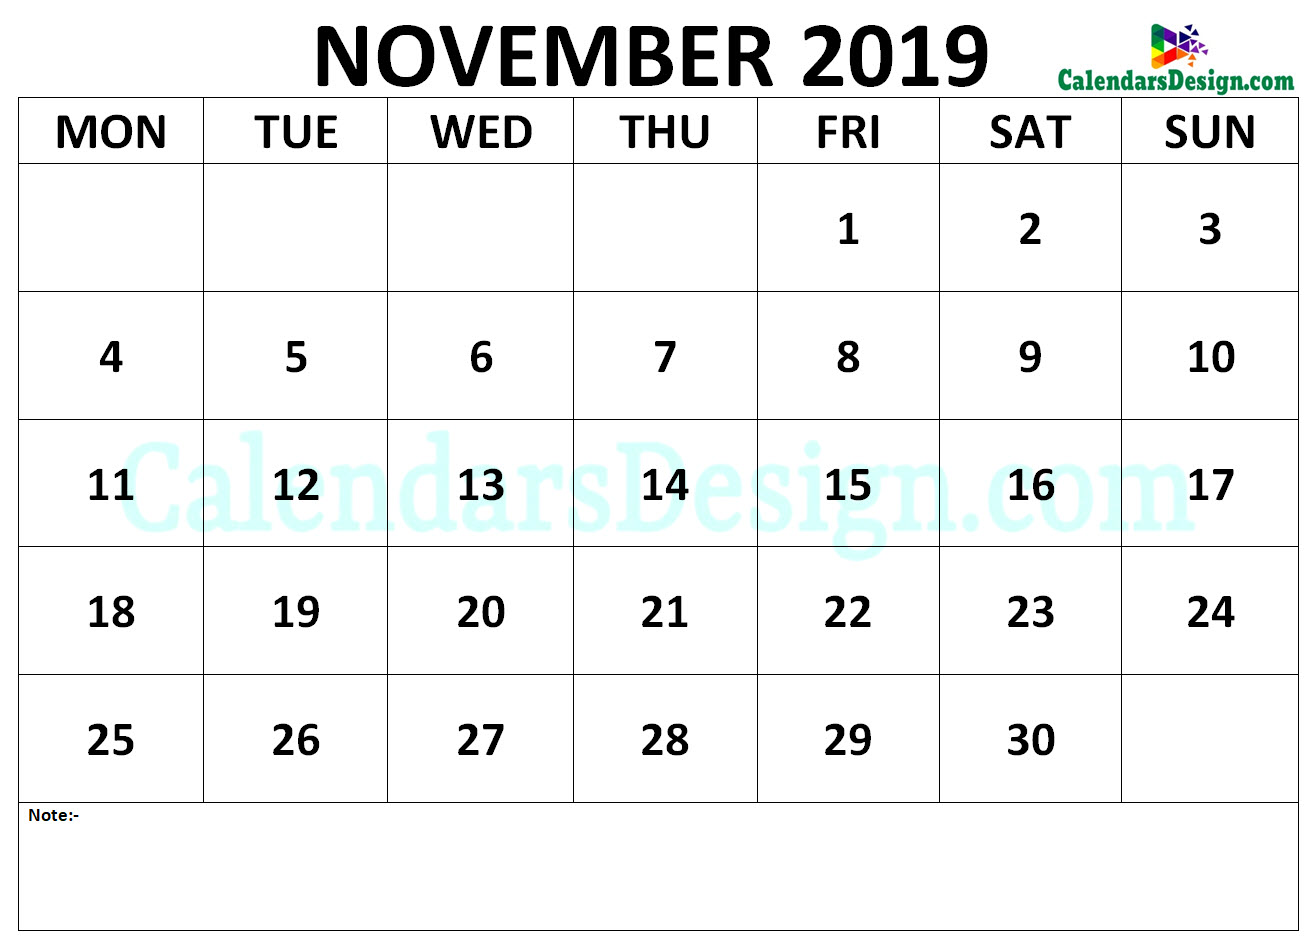 Calendar for November 2019